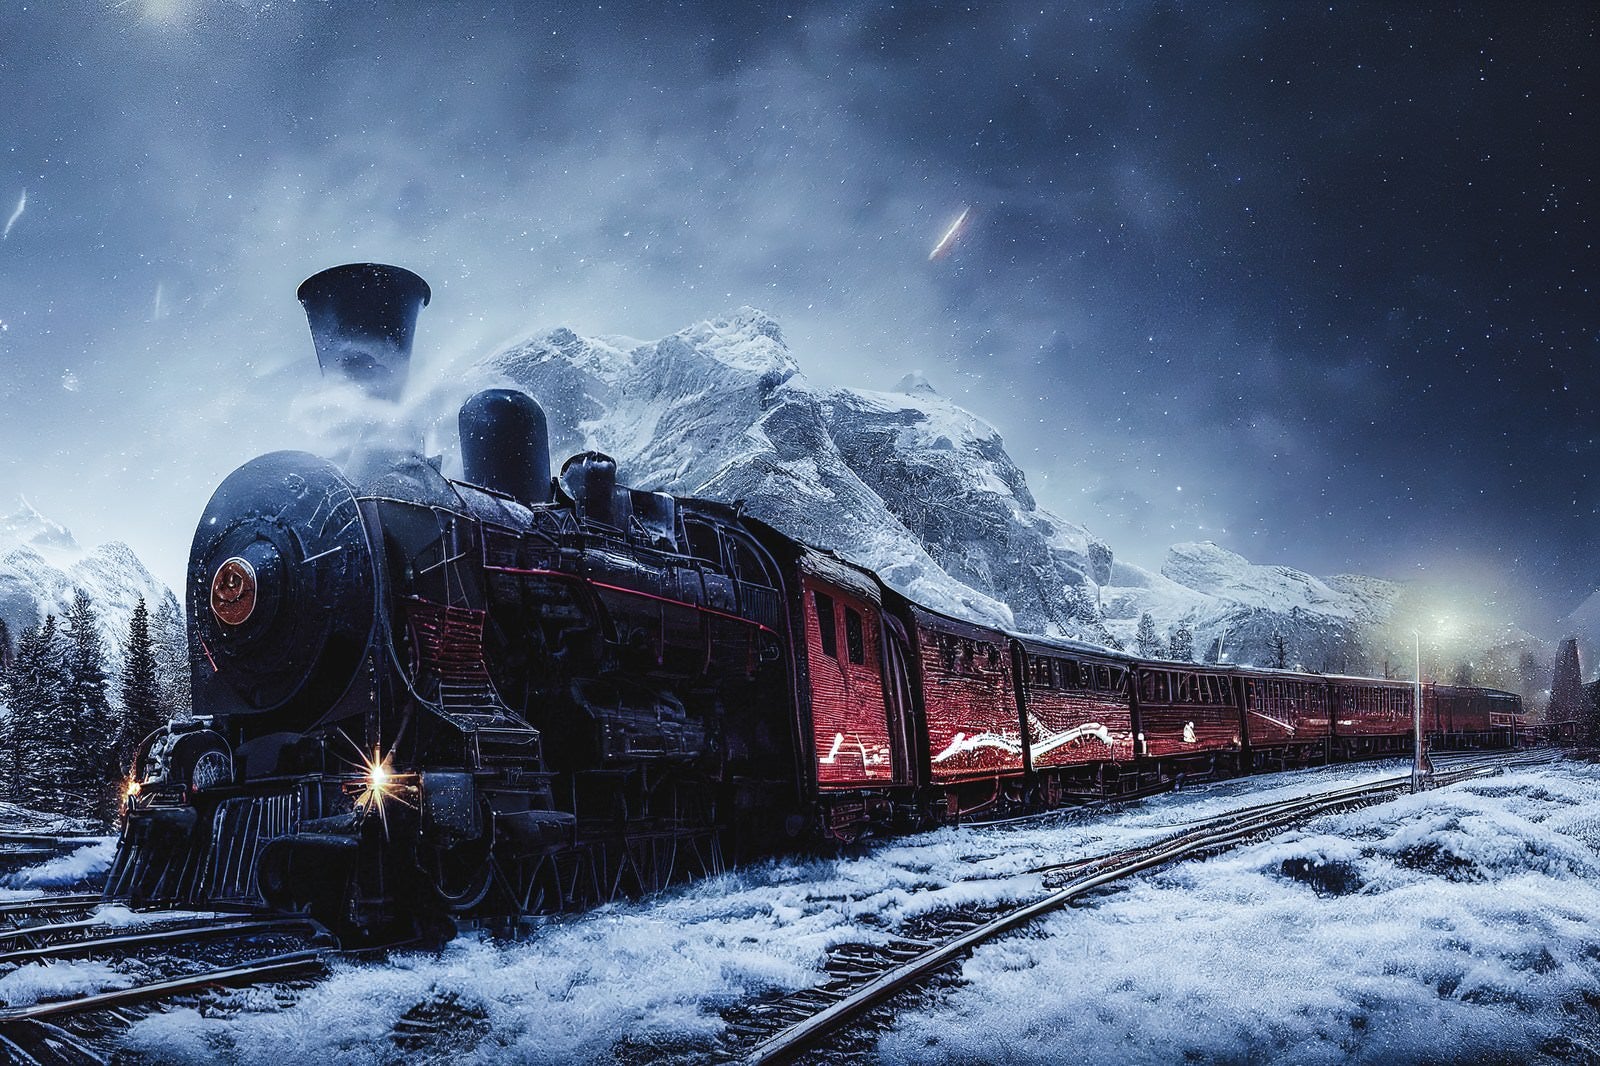 「吹雪の中を進む機関車」の写真